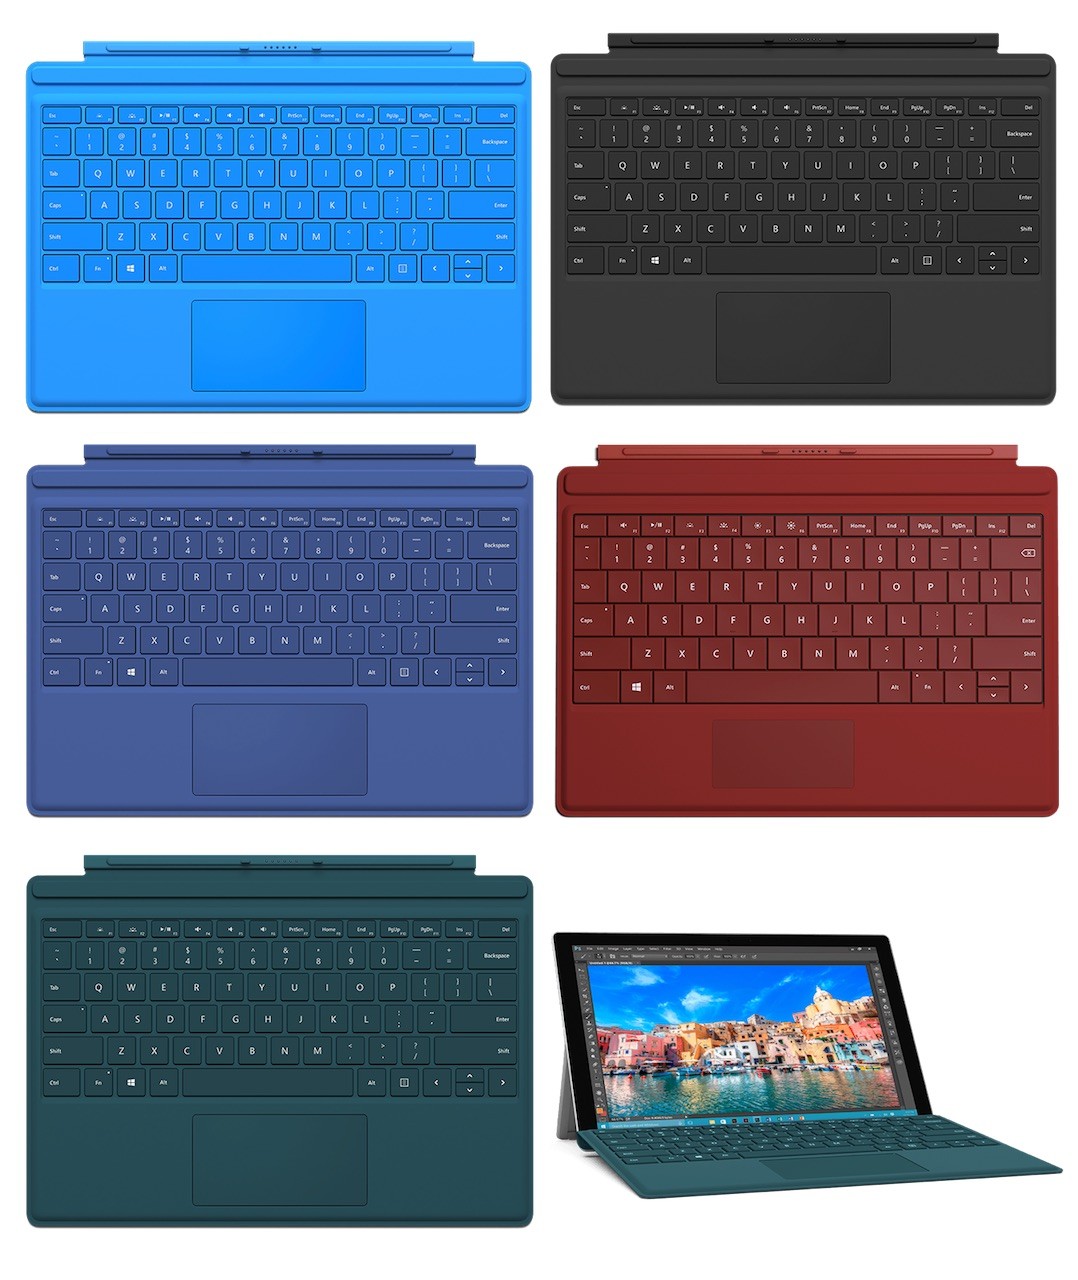 Microsoft 12 3インチ液晶搭載windows 10タブレット Surface Pro 4 を発表 第6世代skylake搭載で30 高速化や薄型 軽量化など 新タイプカバーは指紋センサー搭載モデルも用意 S Max